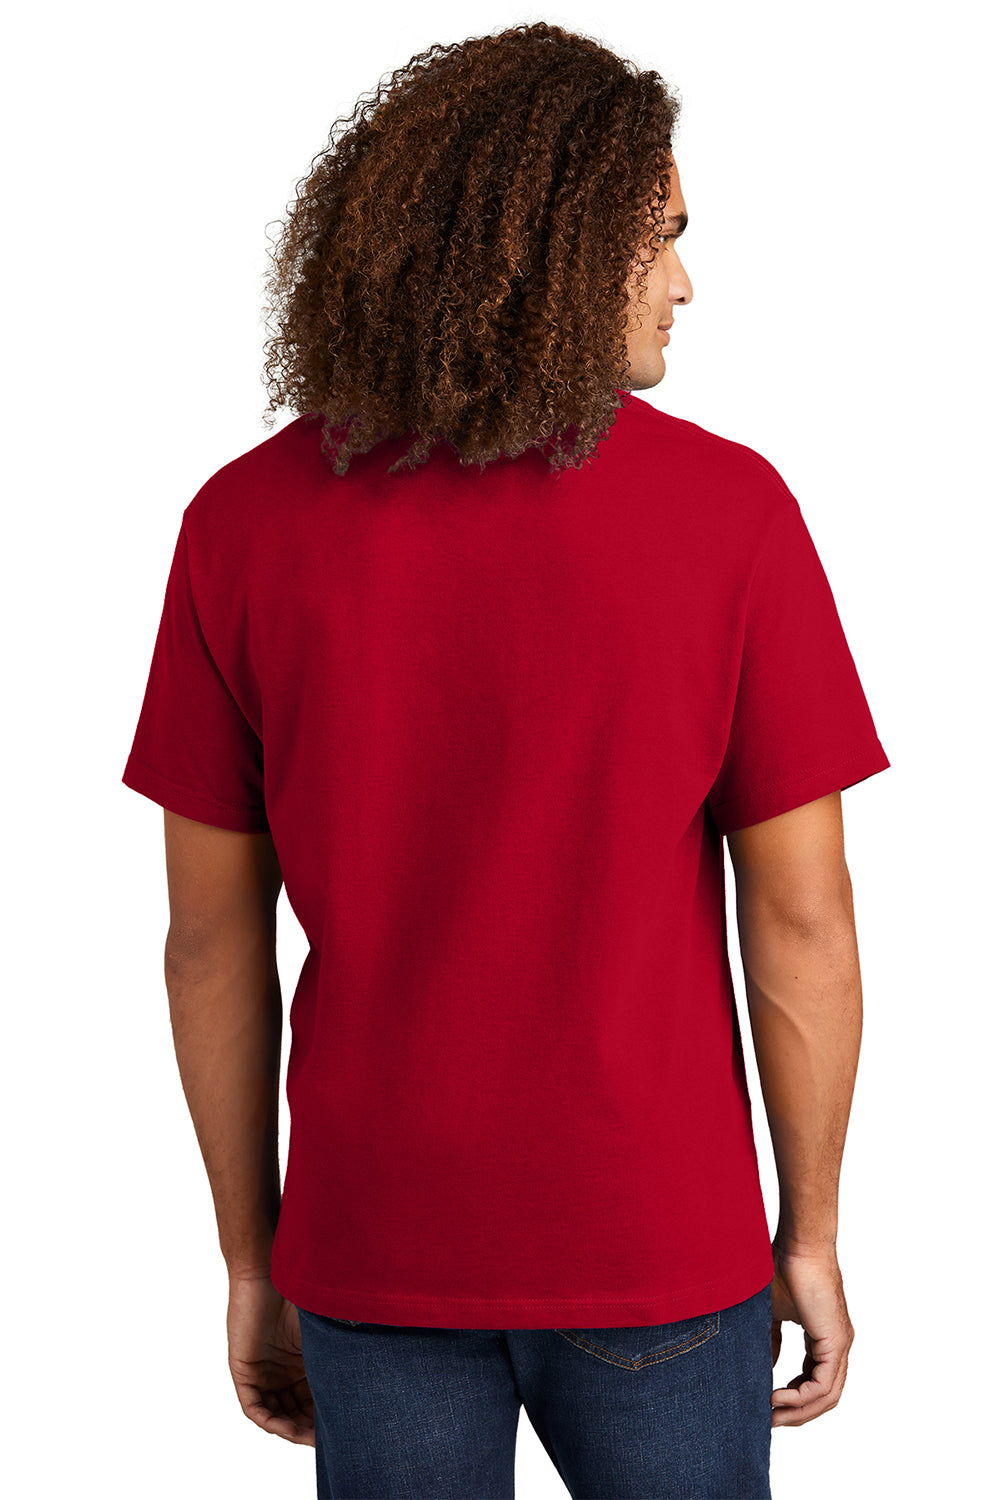 American Apparel 1301/AL1301 Mens Short Sleeve Crewneck T-Shirt Red Model Back